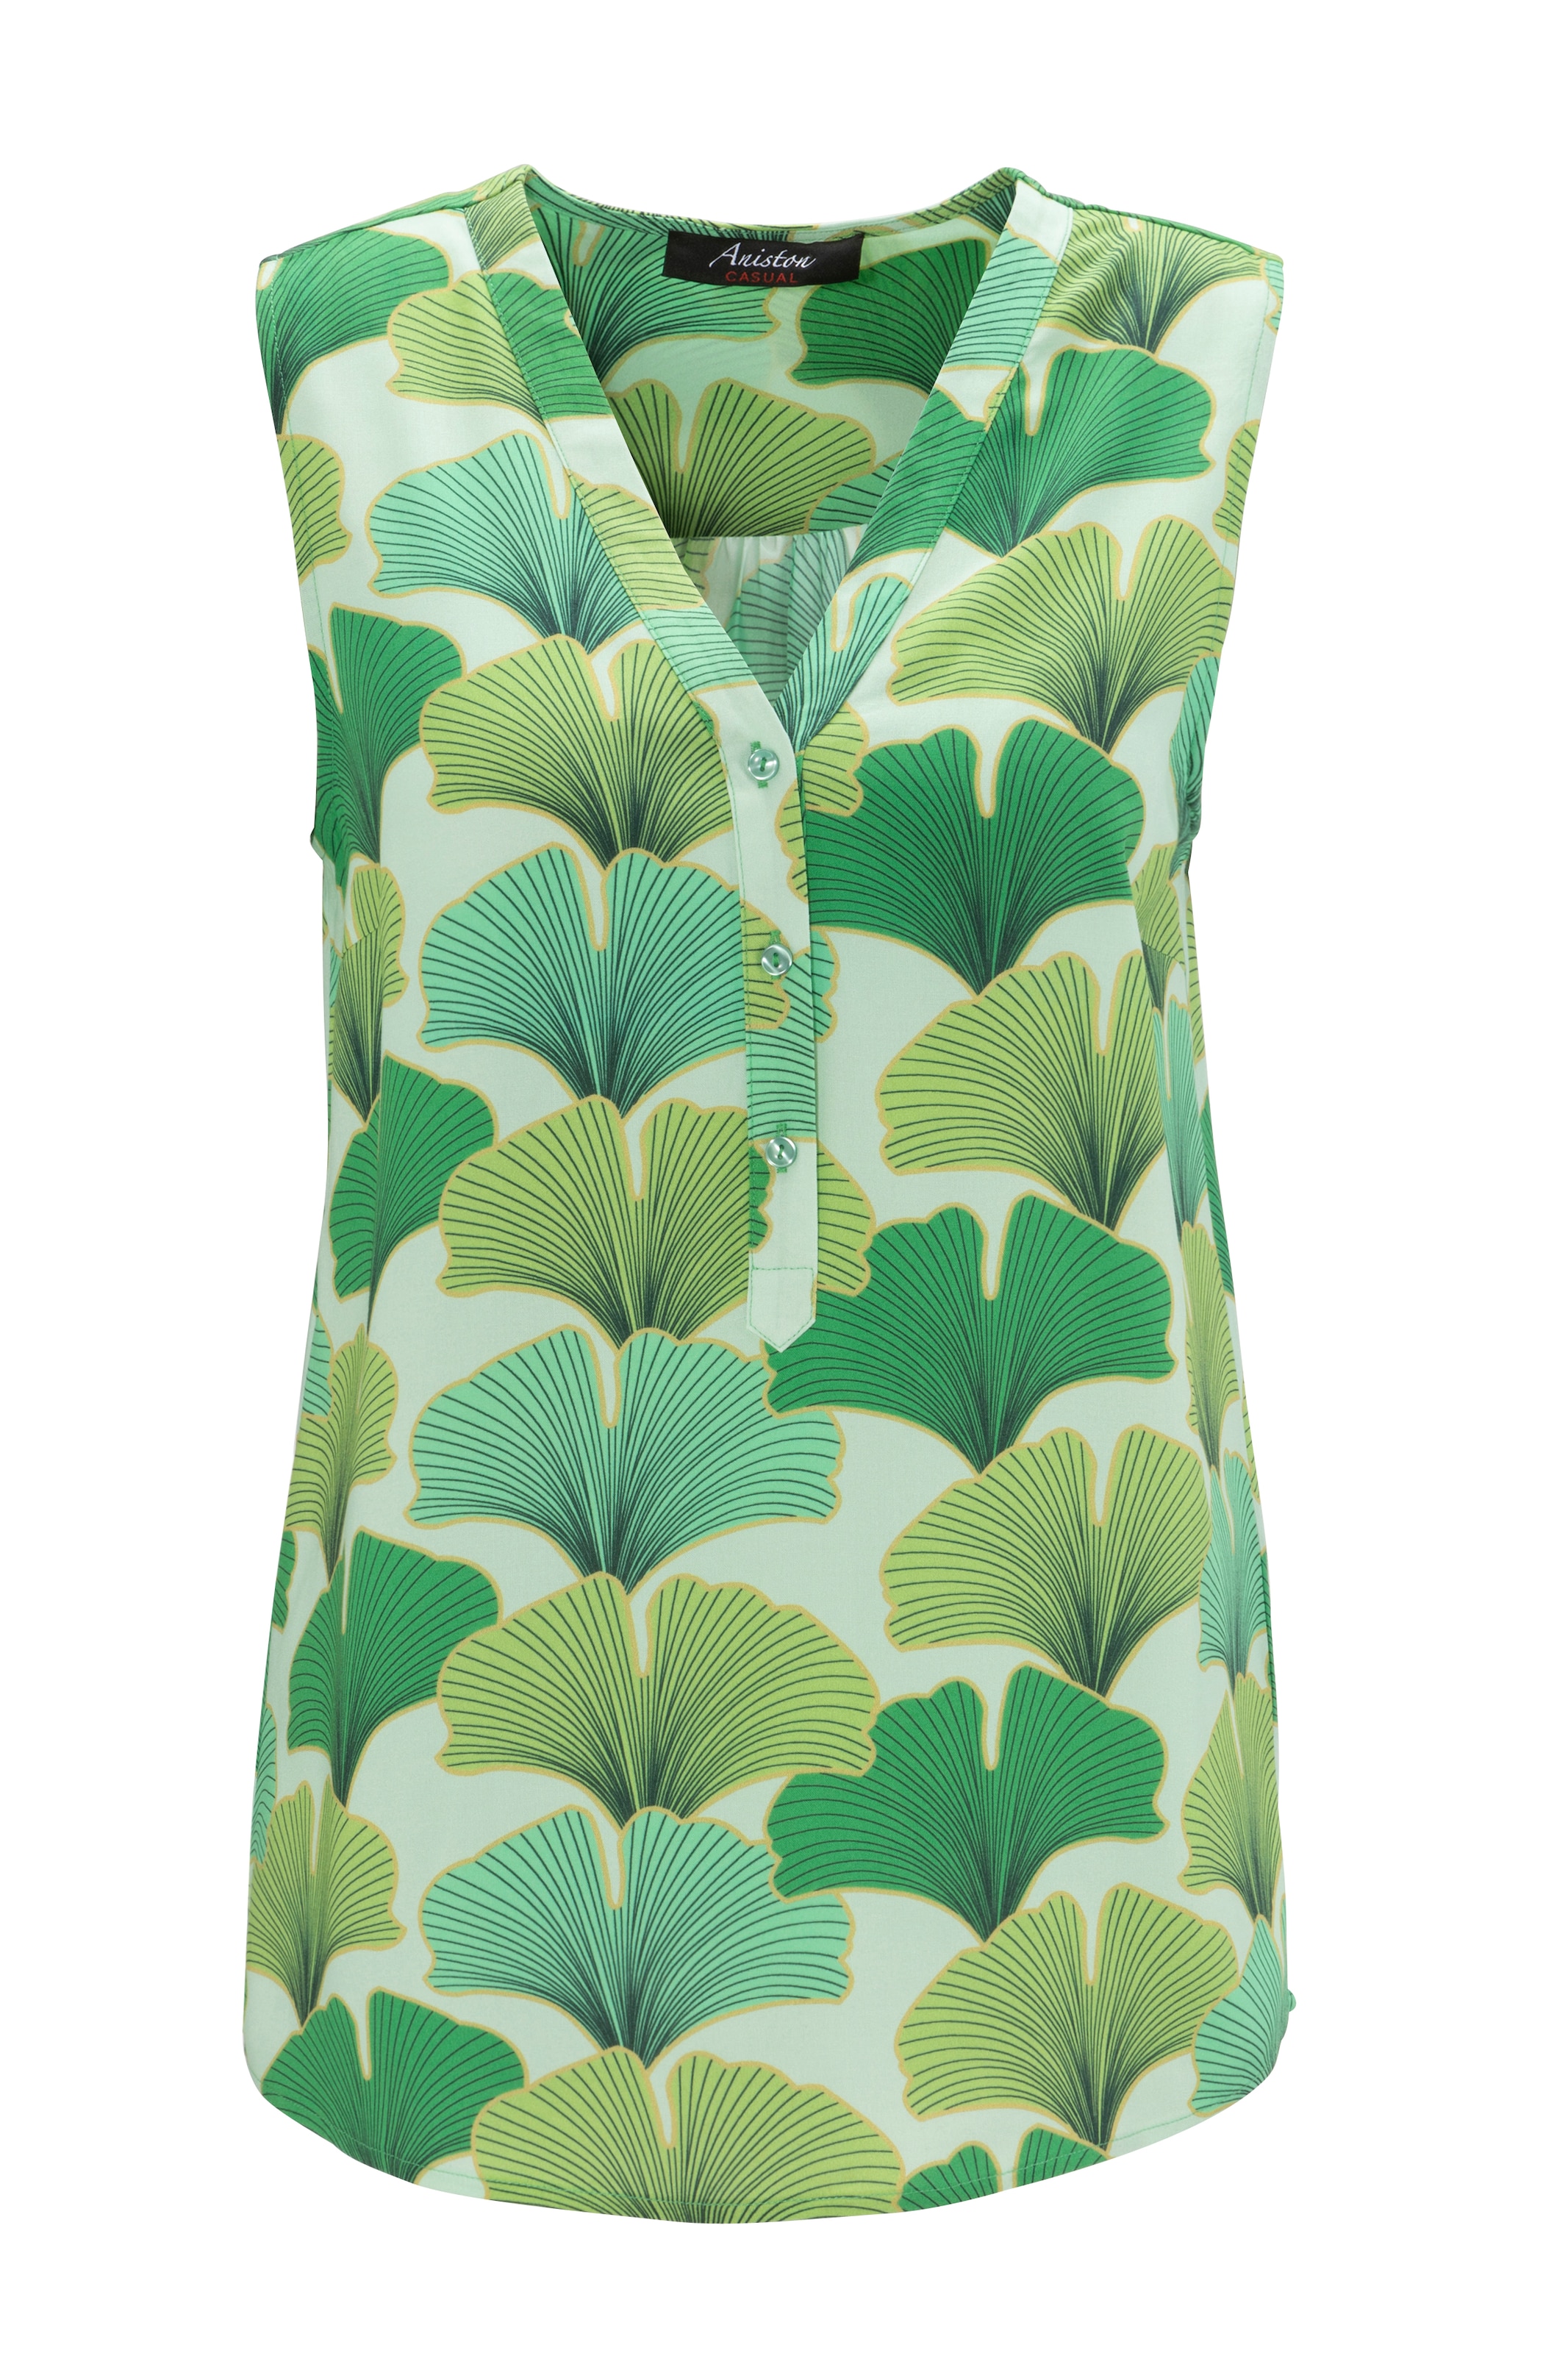 Aniston CASUAL Blusentop, mit farbharmonischen, großflächigen Blättern bedruckt